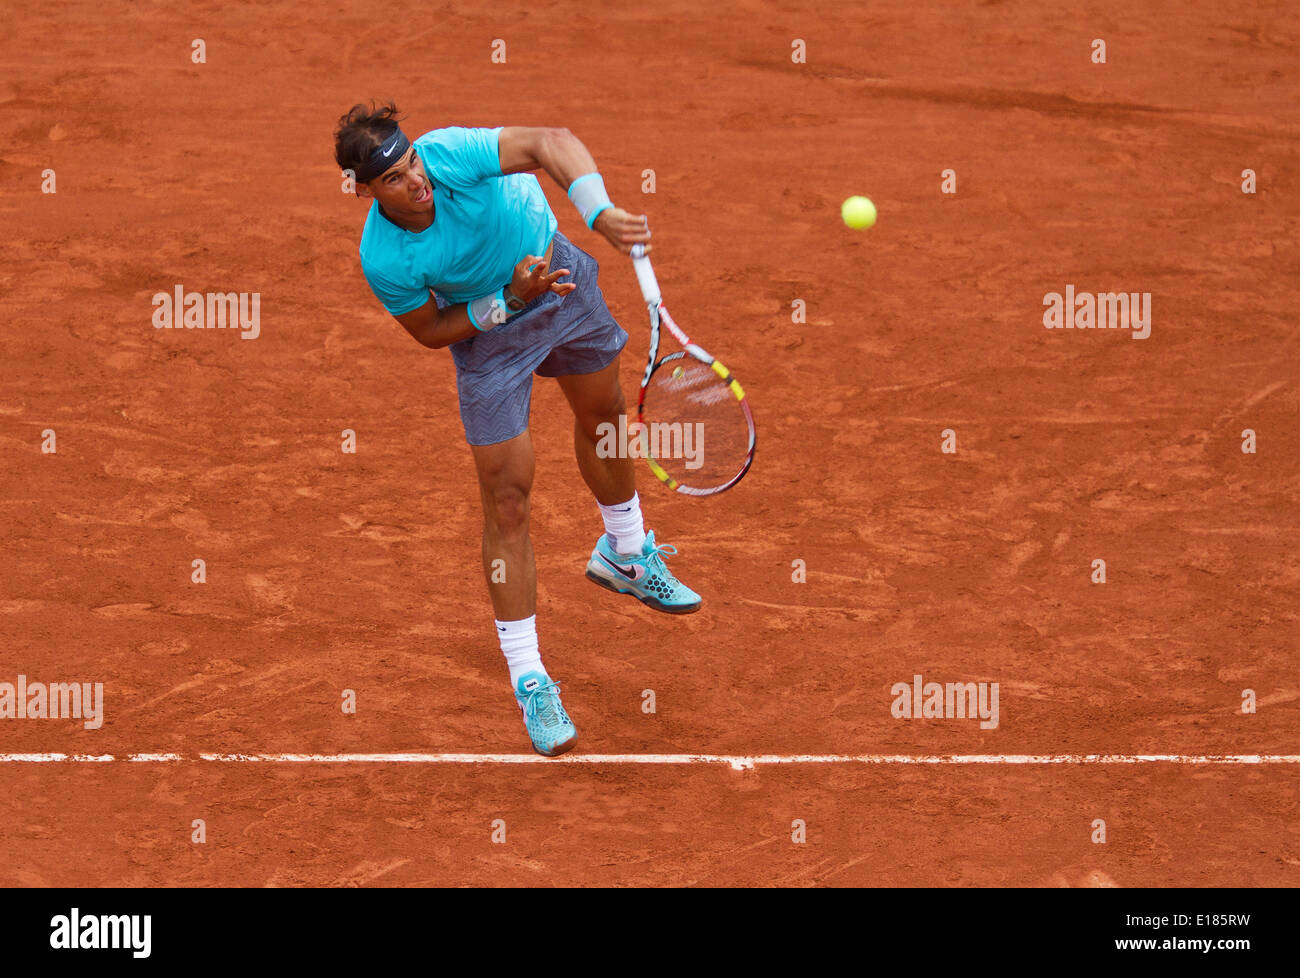 Francia, Paris, 26 de mayo de 2014. Tenis, Roland Garros, Rafael Nadal (ESP) es golpear un smash en su partido contra Robby Ginepri (USA) Foto:Tennisimages/Henk Koster/Alamy Live News Foto de stock